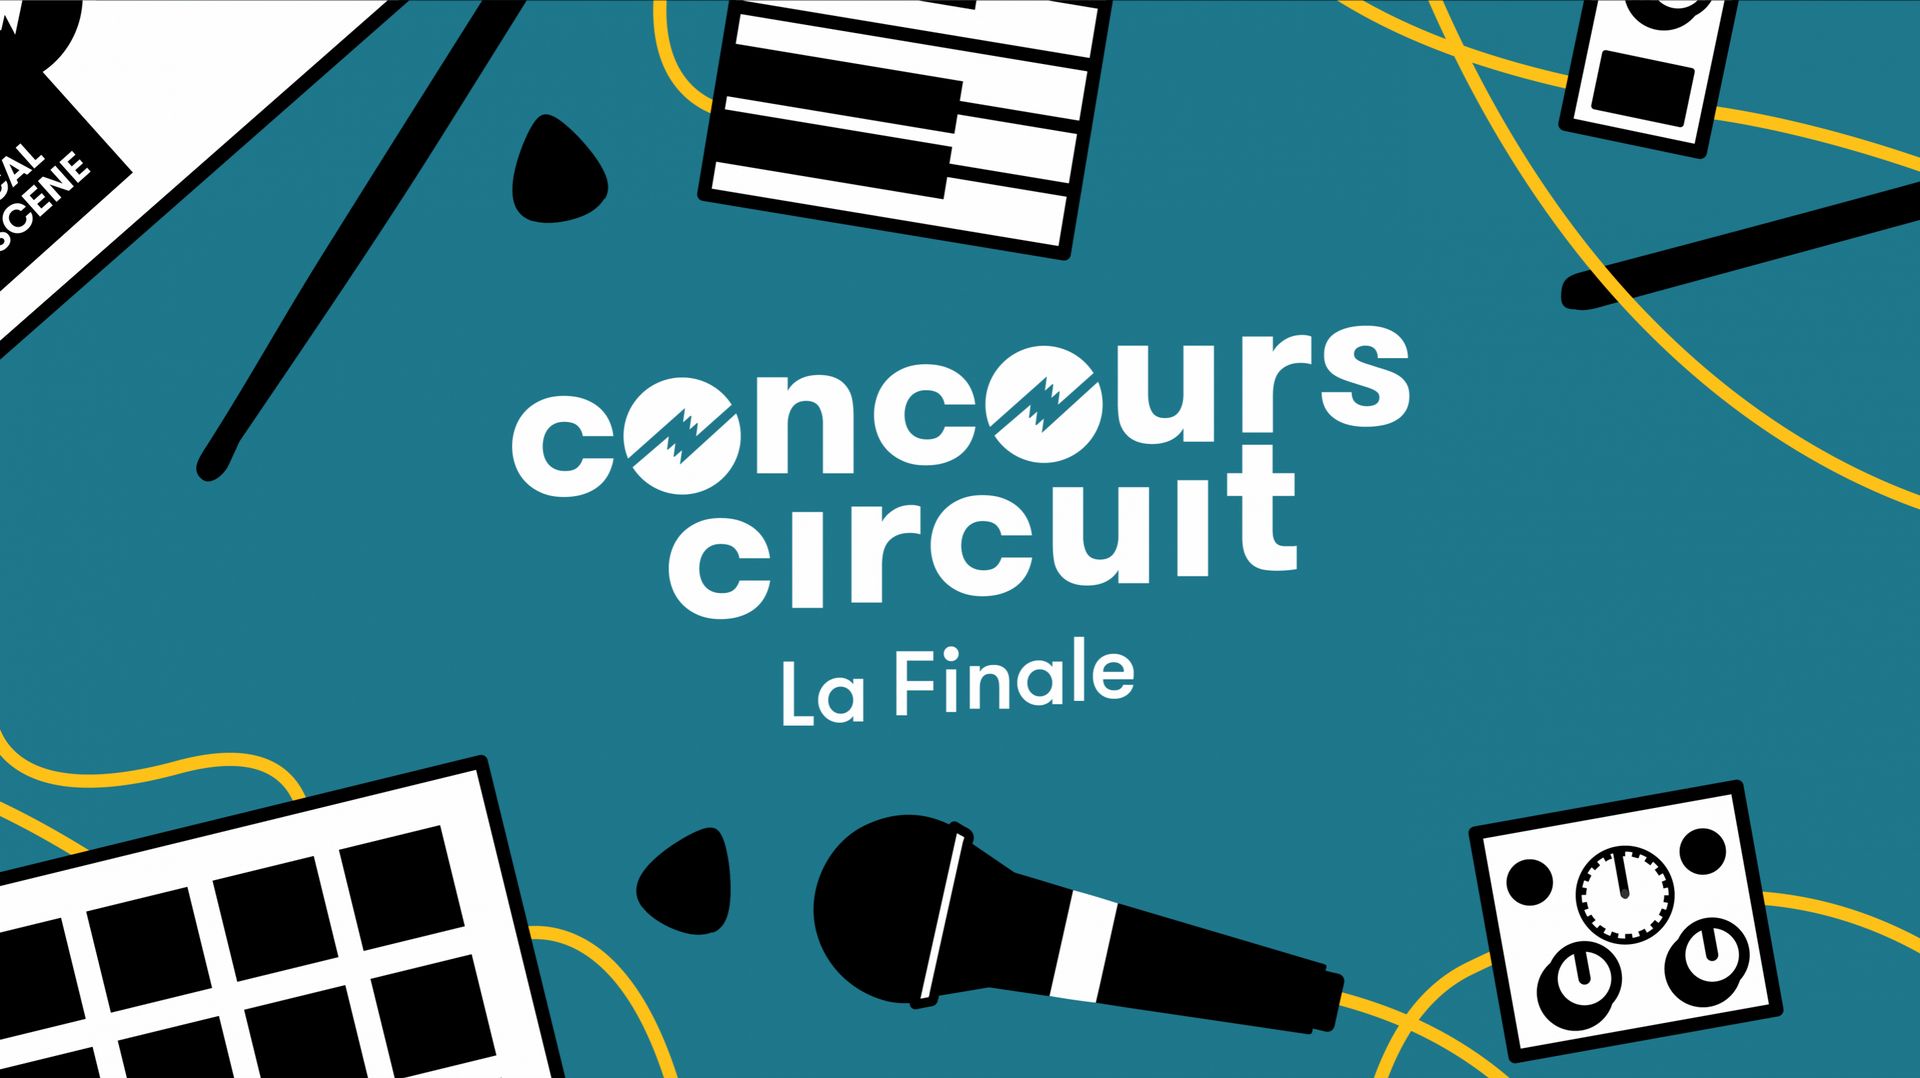 La finale du Concours Circuit aura lieu le 14 février 2021.